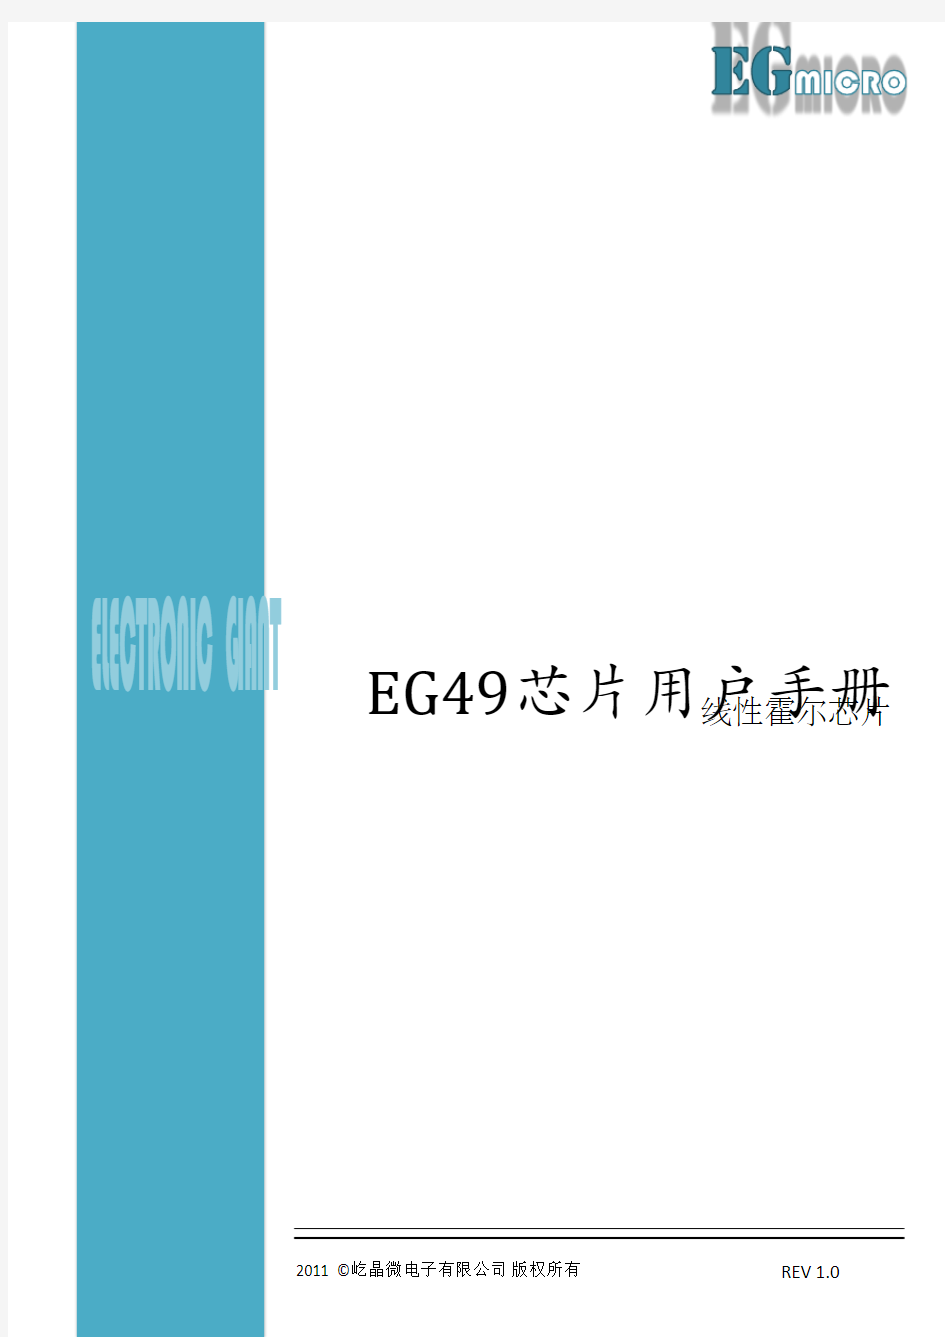 EG49线性霍尔芯片用户手册-屹晶微